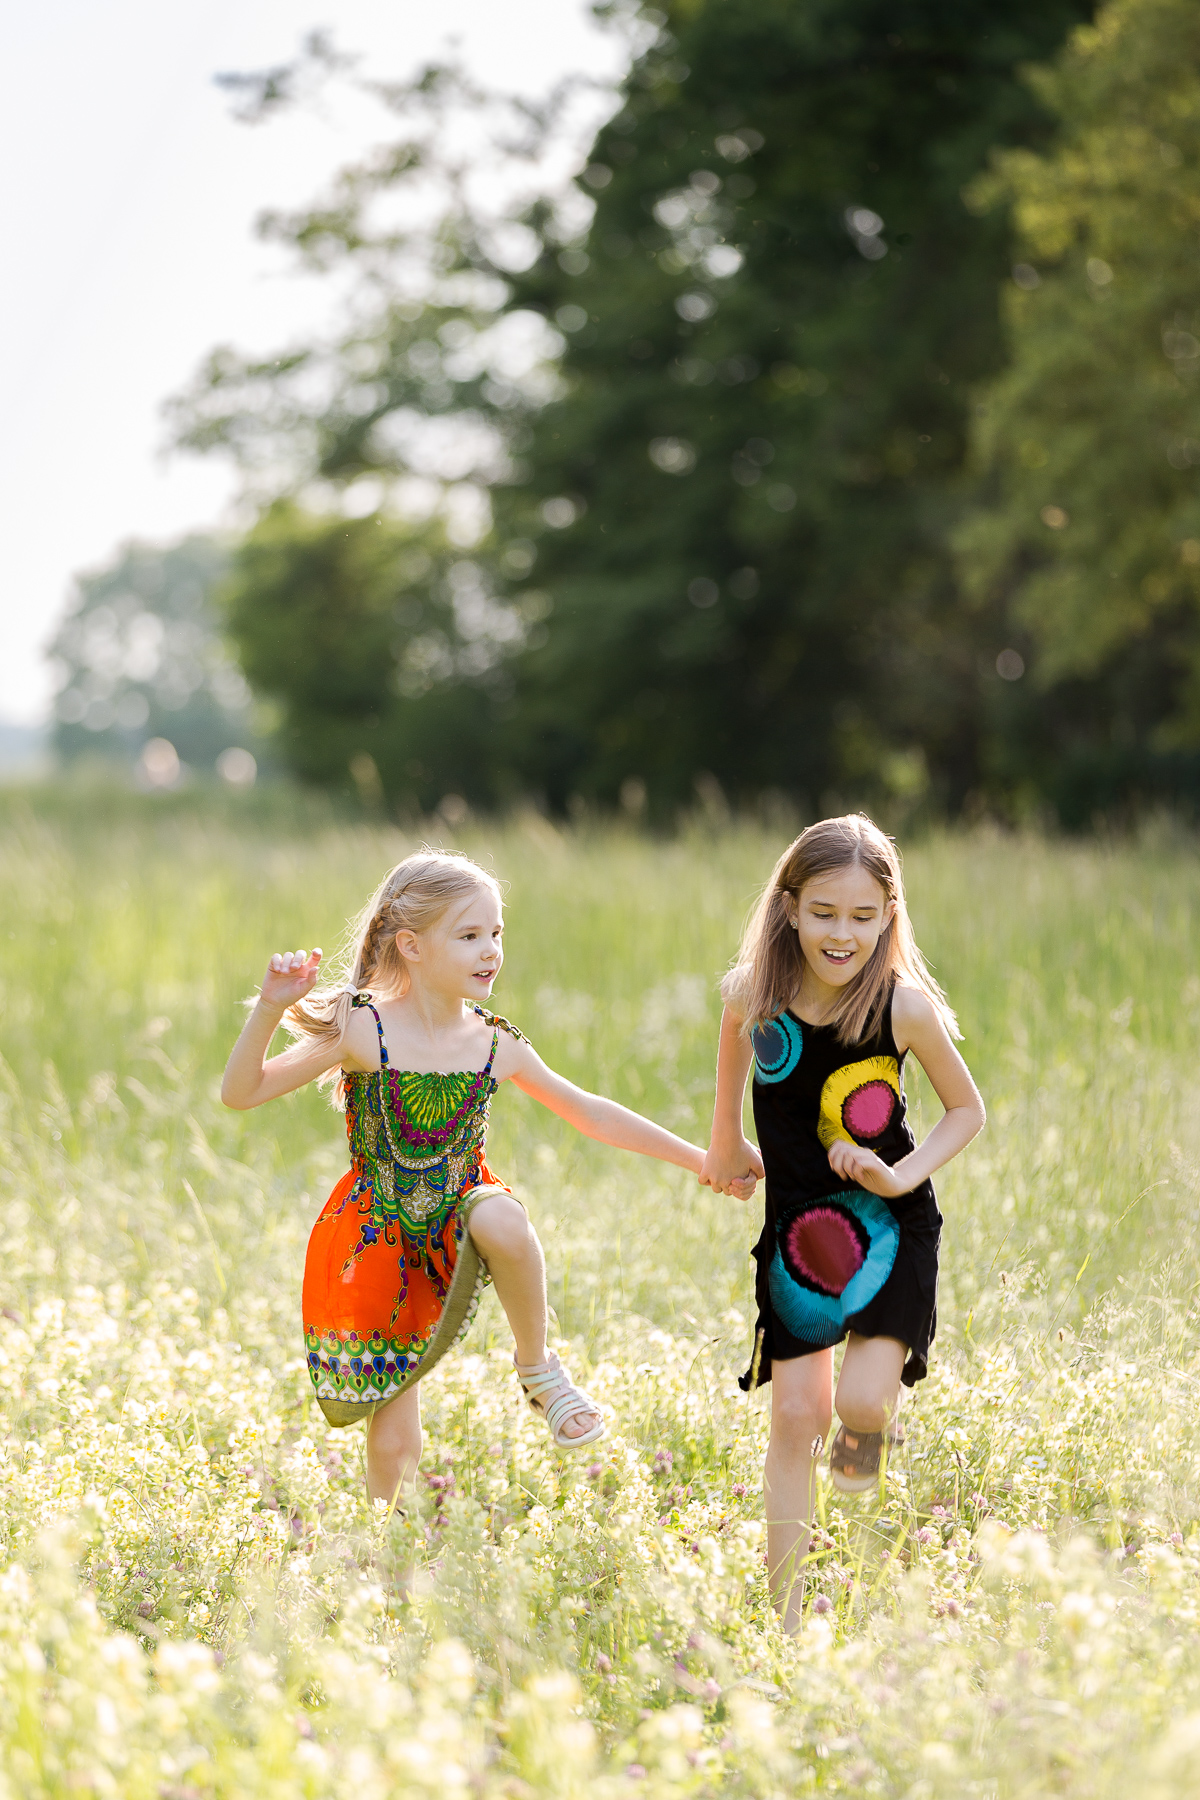 Zwei junge Geschwister rennen im Feld und freuen sich